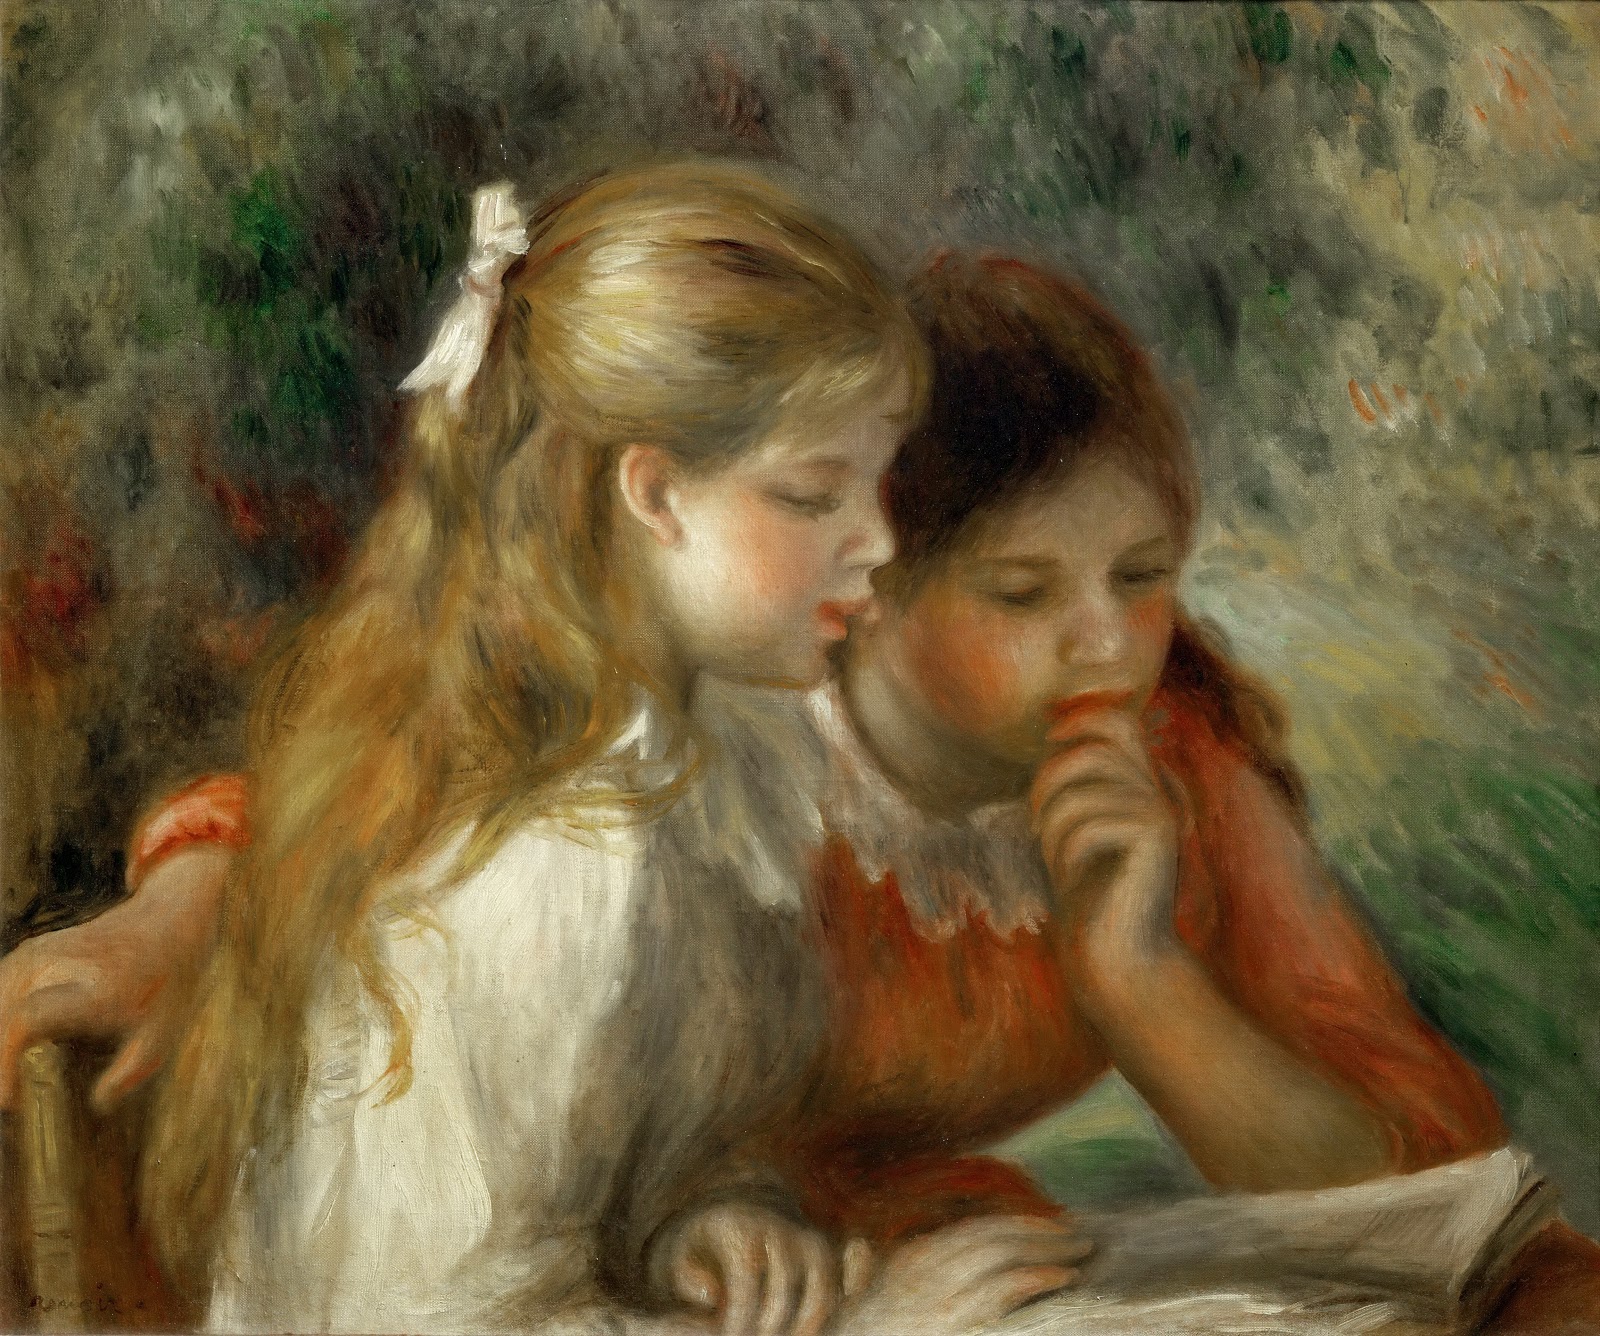 Pierre+Auguste+Renoir-1841-1-19 (878).jpg